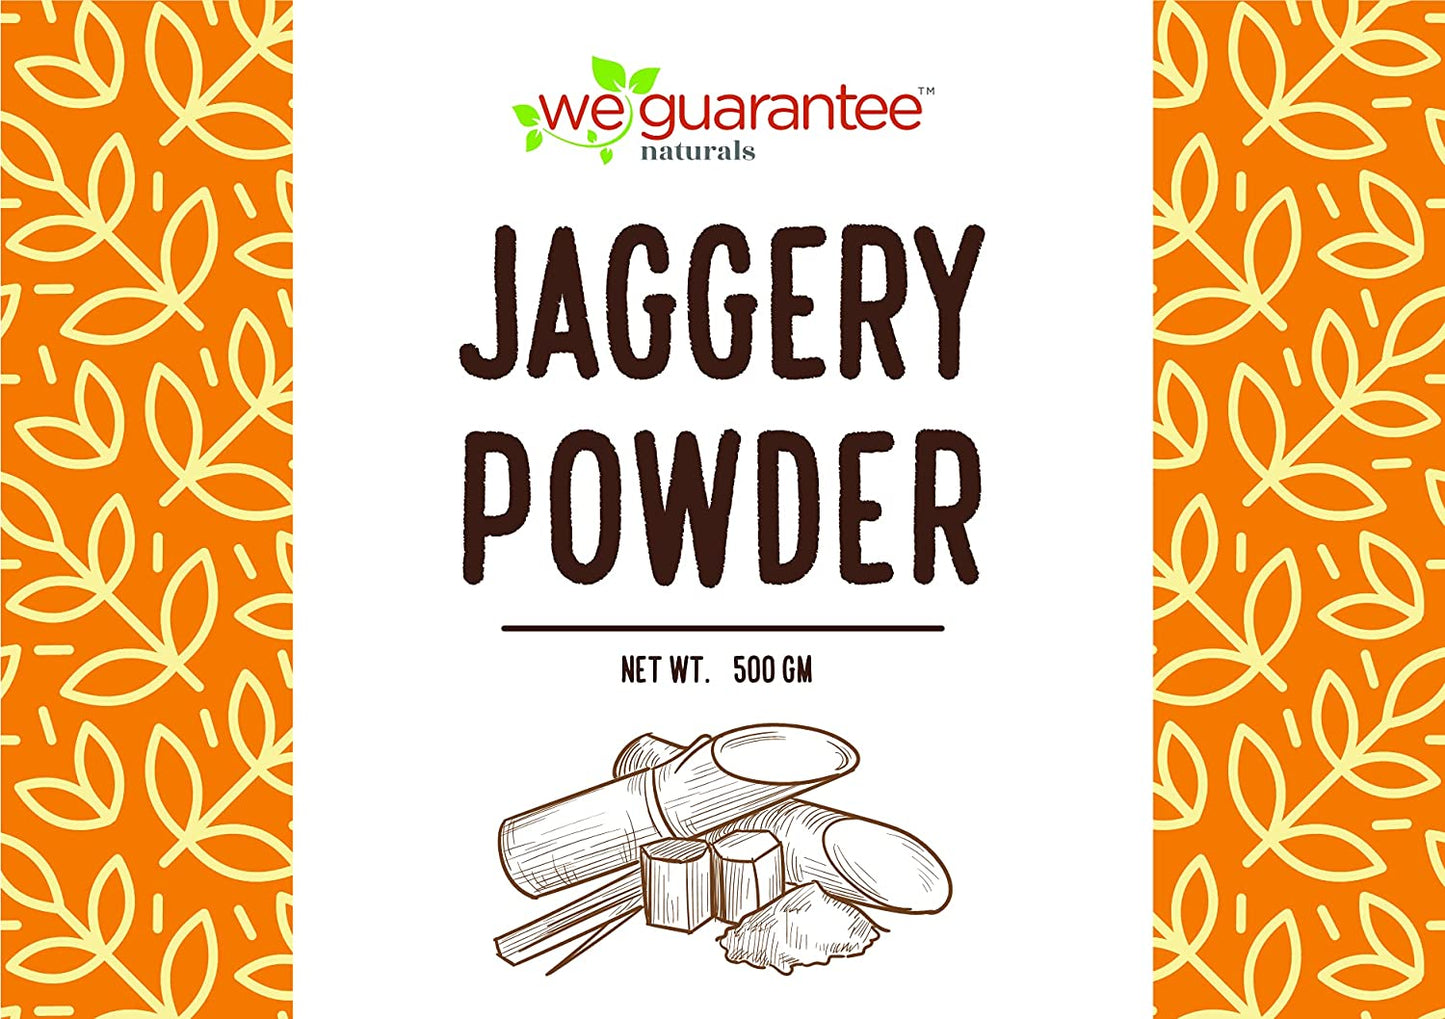 Weguarantee Jaggery Powder - 500 GMS